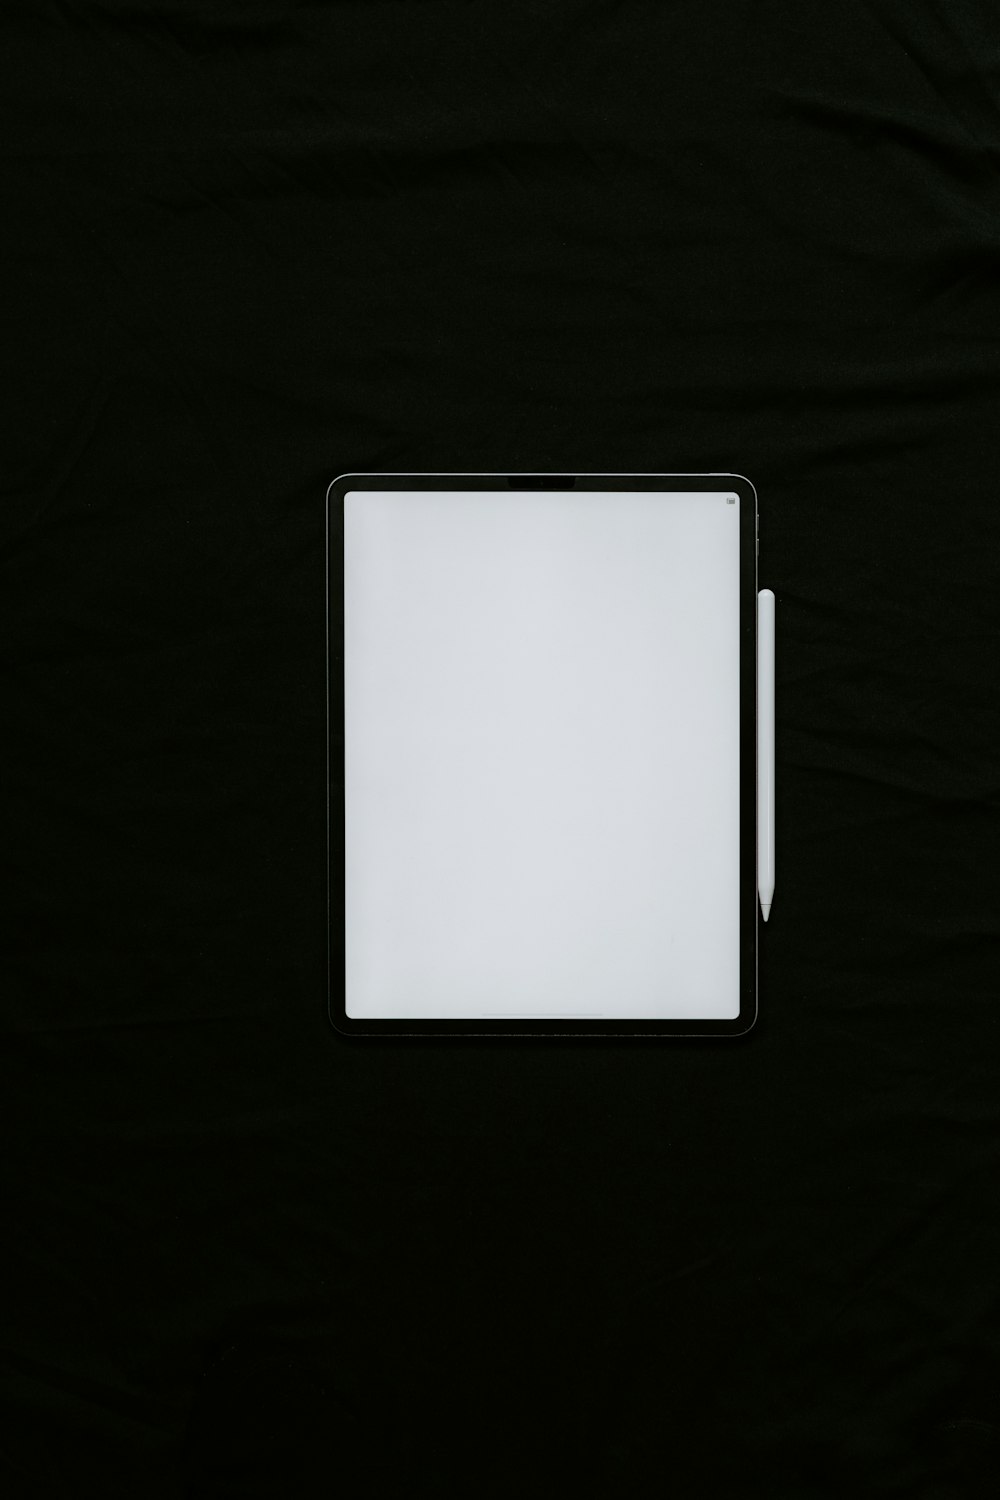 黒い布地に白い長方形のデバイス